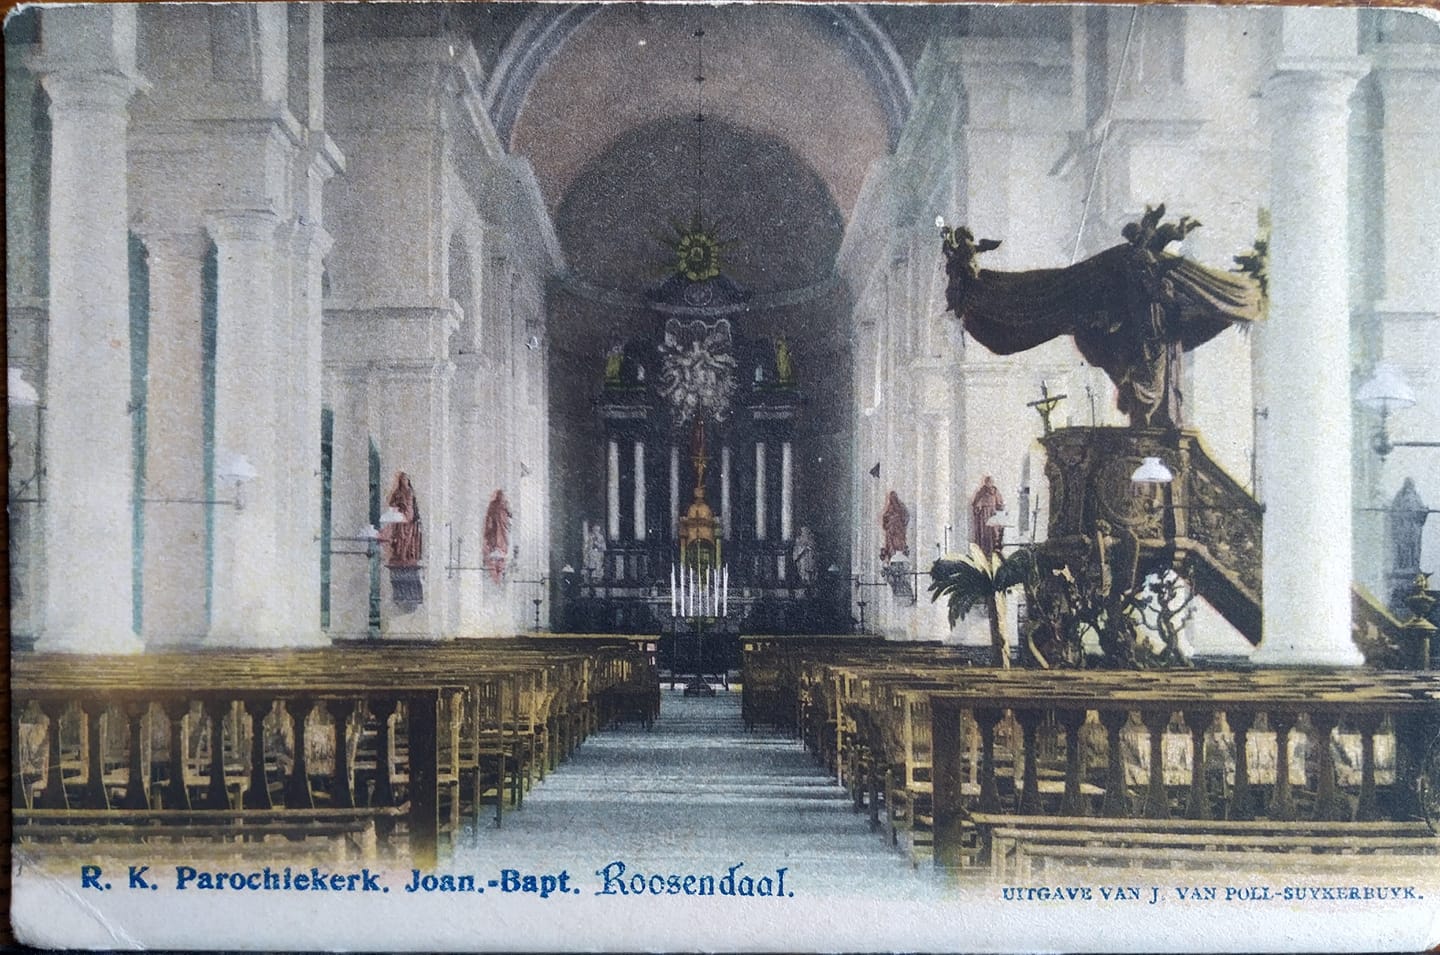 Het interieur van de Sint-Janskerk, begin 20e eeuw (uitg. J. van Poll-Suykerbuyk). Ingezonden door Lya van Dorst